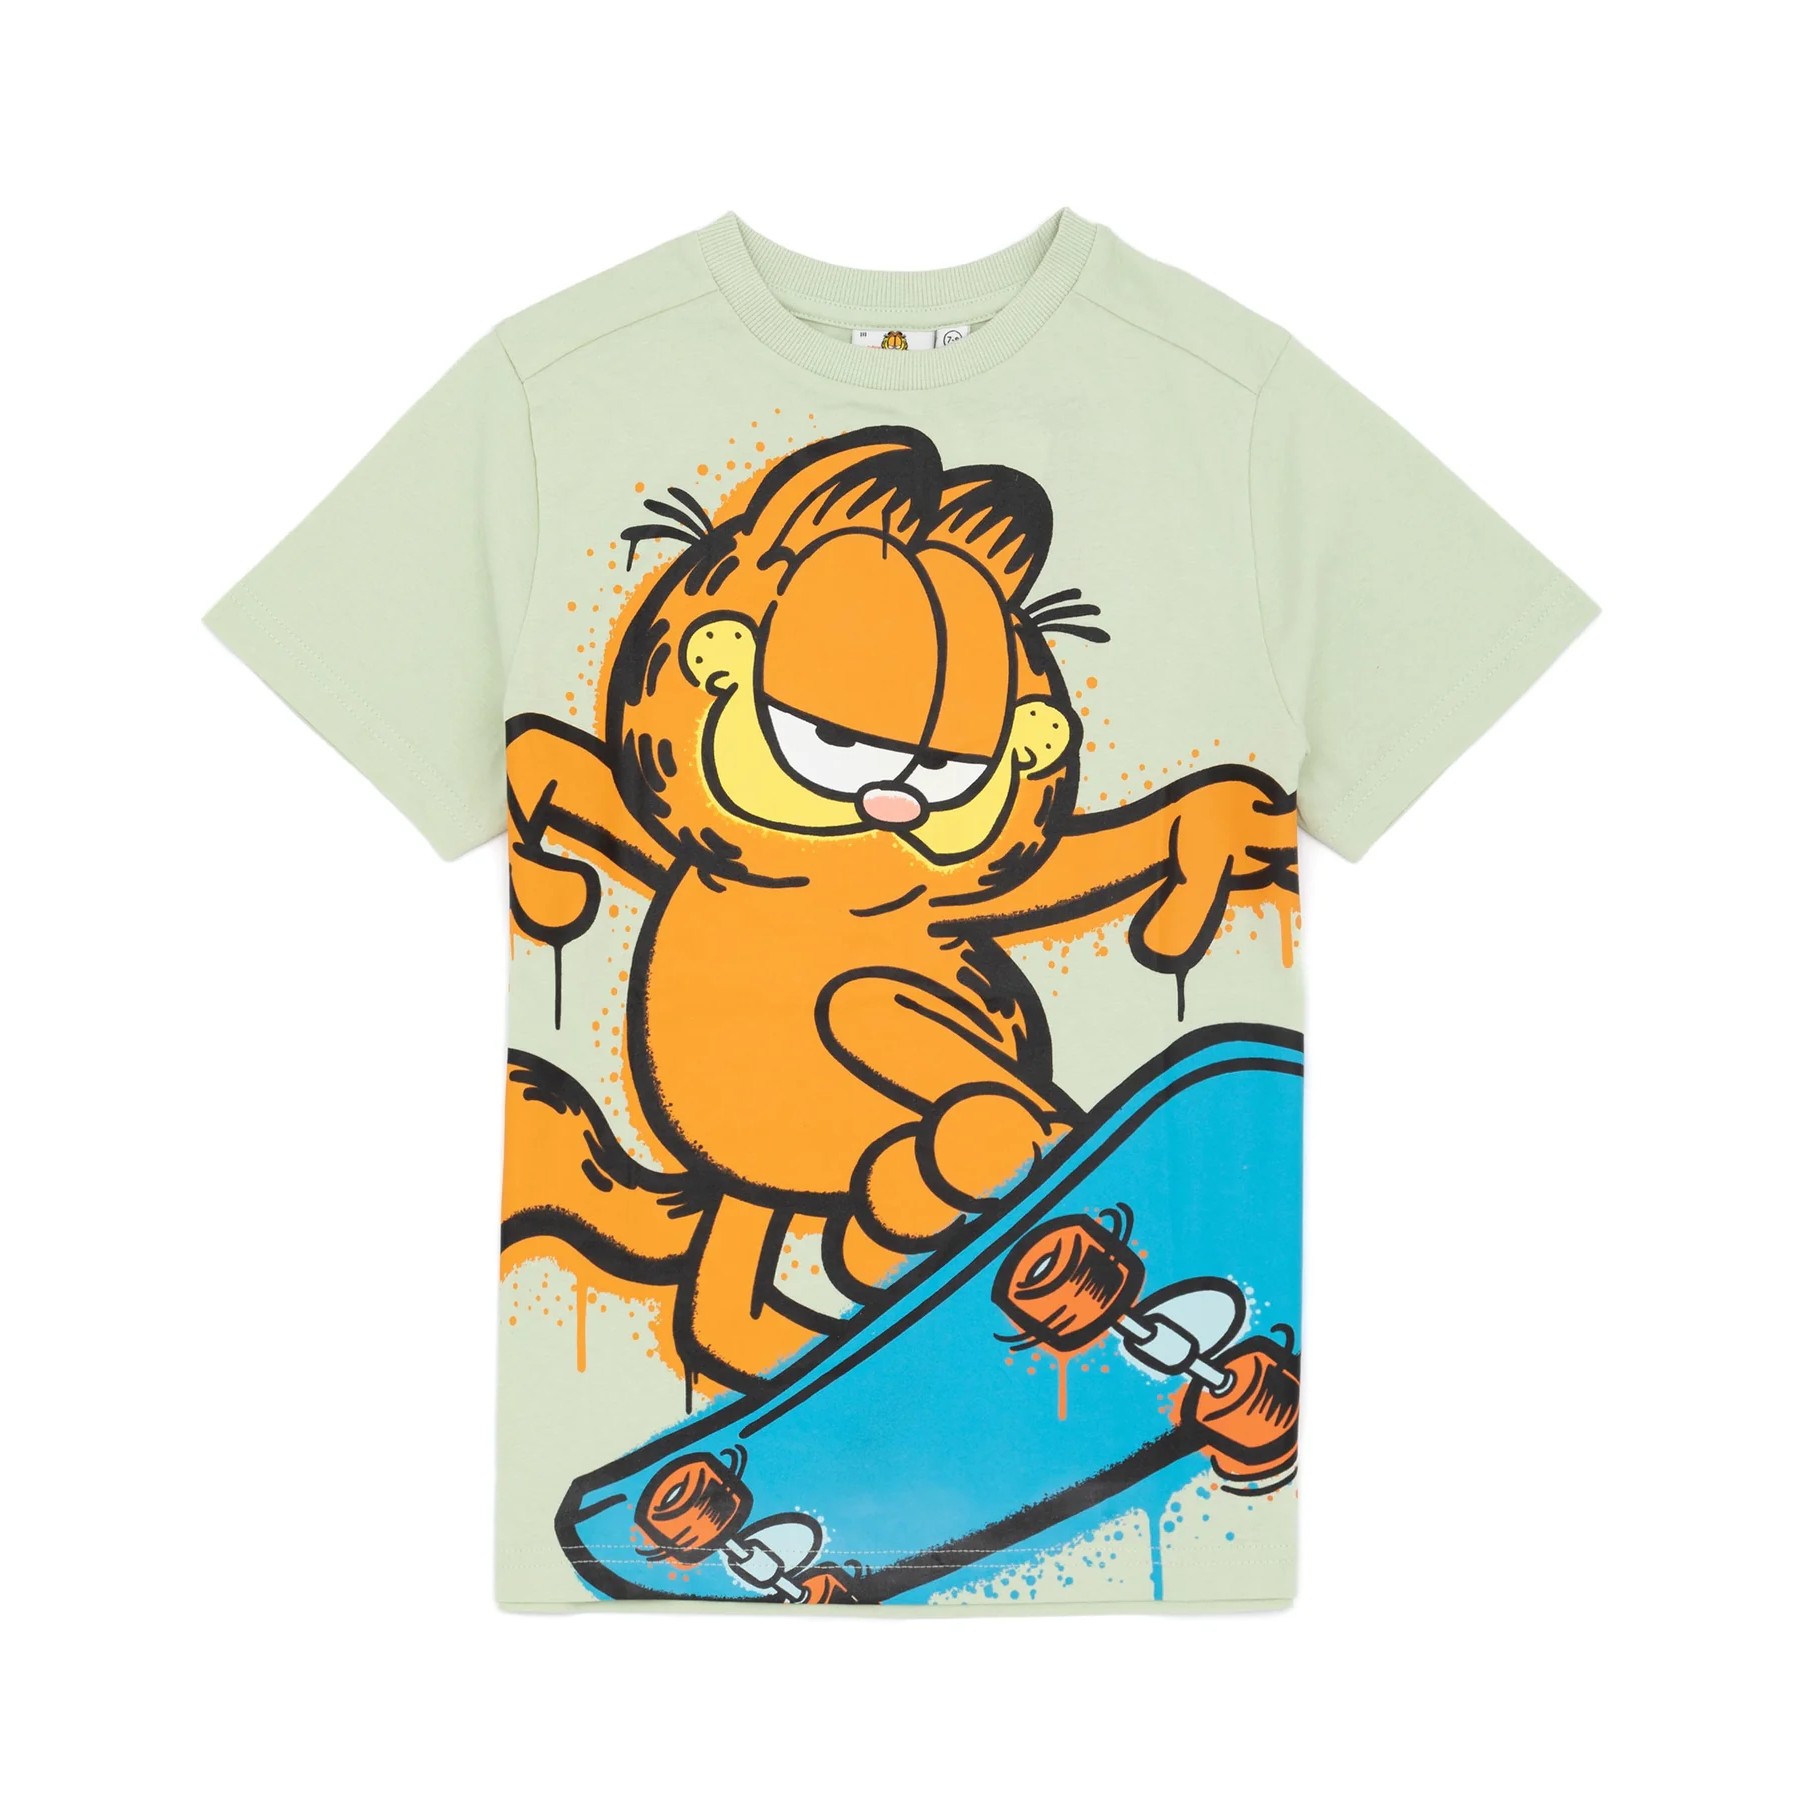 (ガーフィールド) Garfield オフィシャル商品 キッズ 子供 スケートボード Tシャツ 半袖 トップス カットソー 【海外通販】